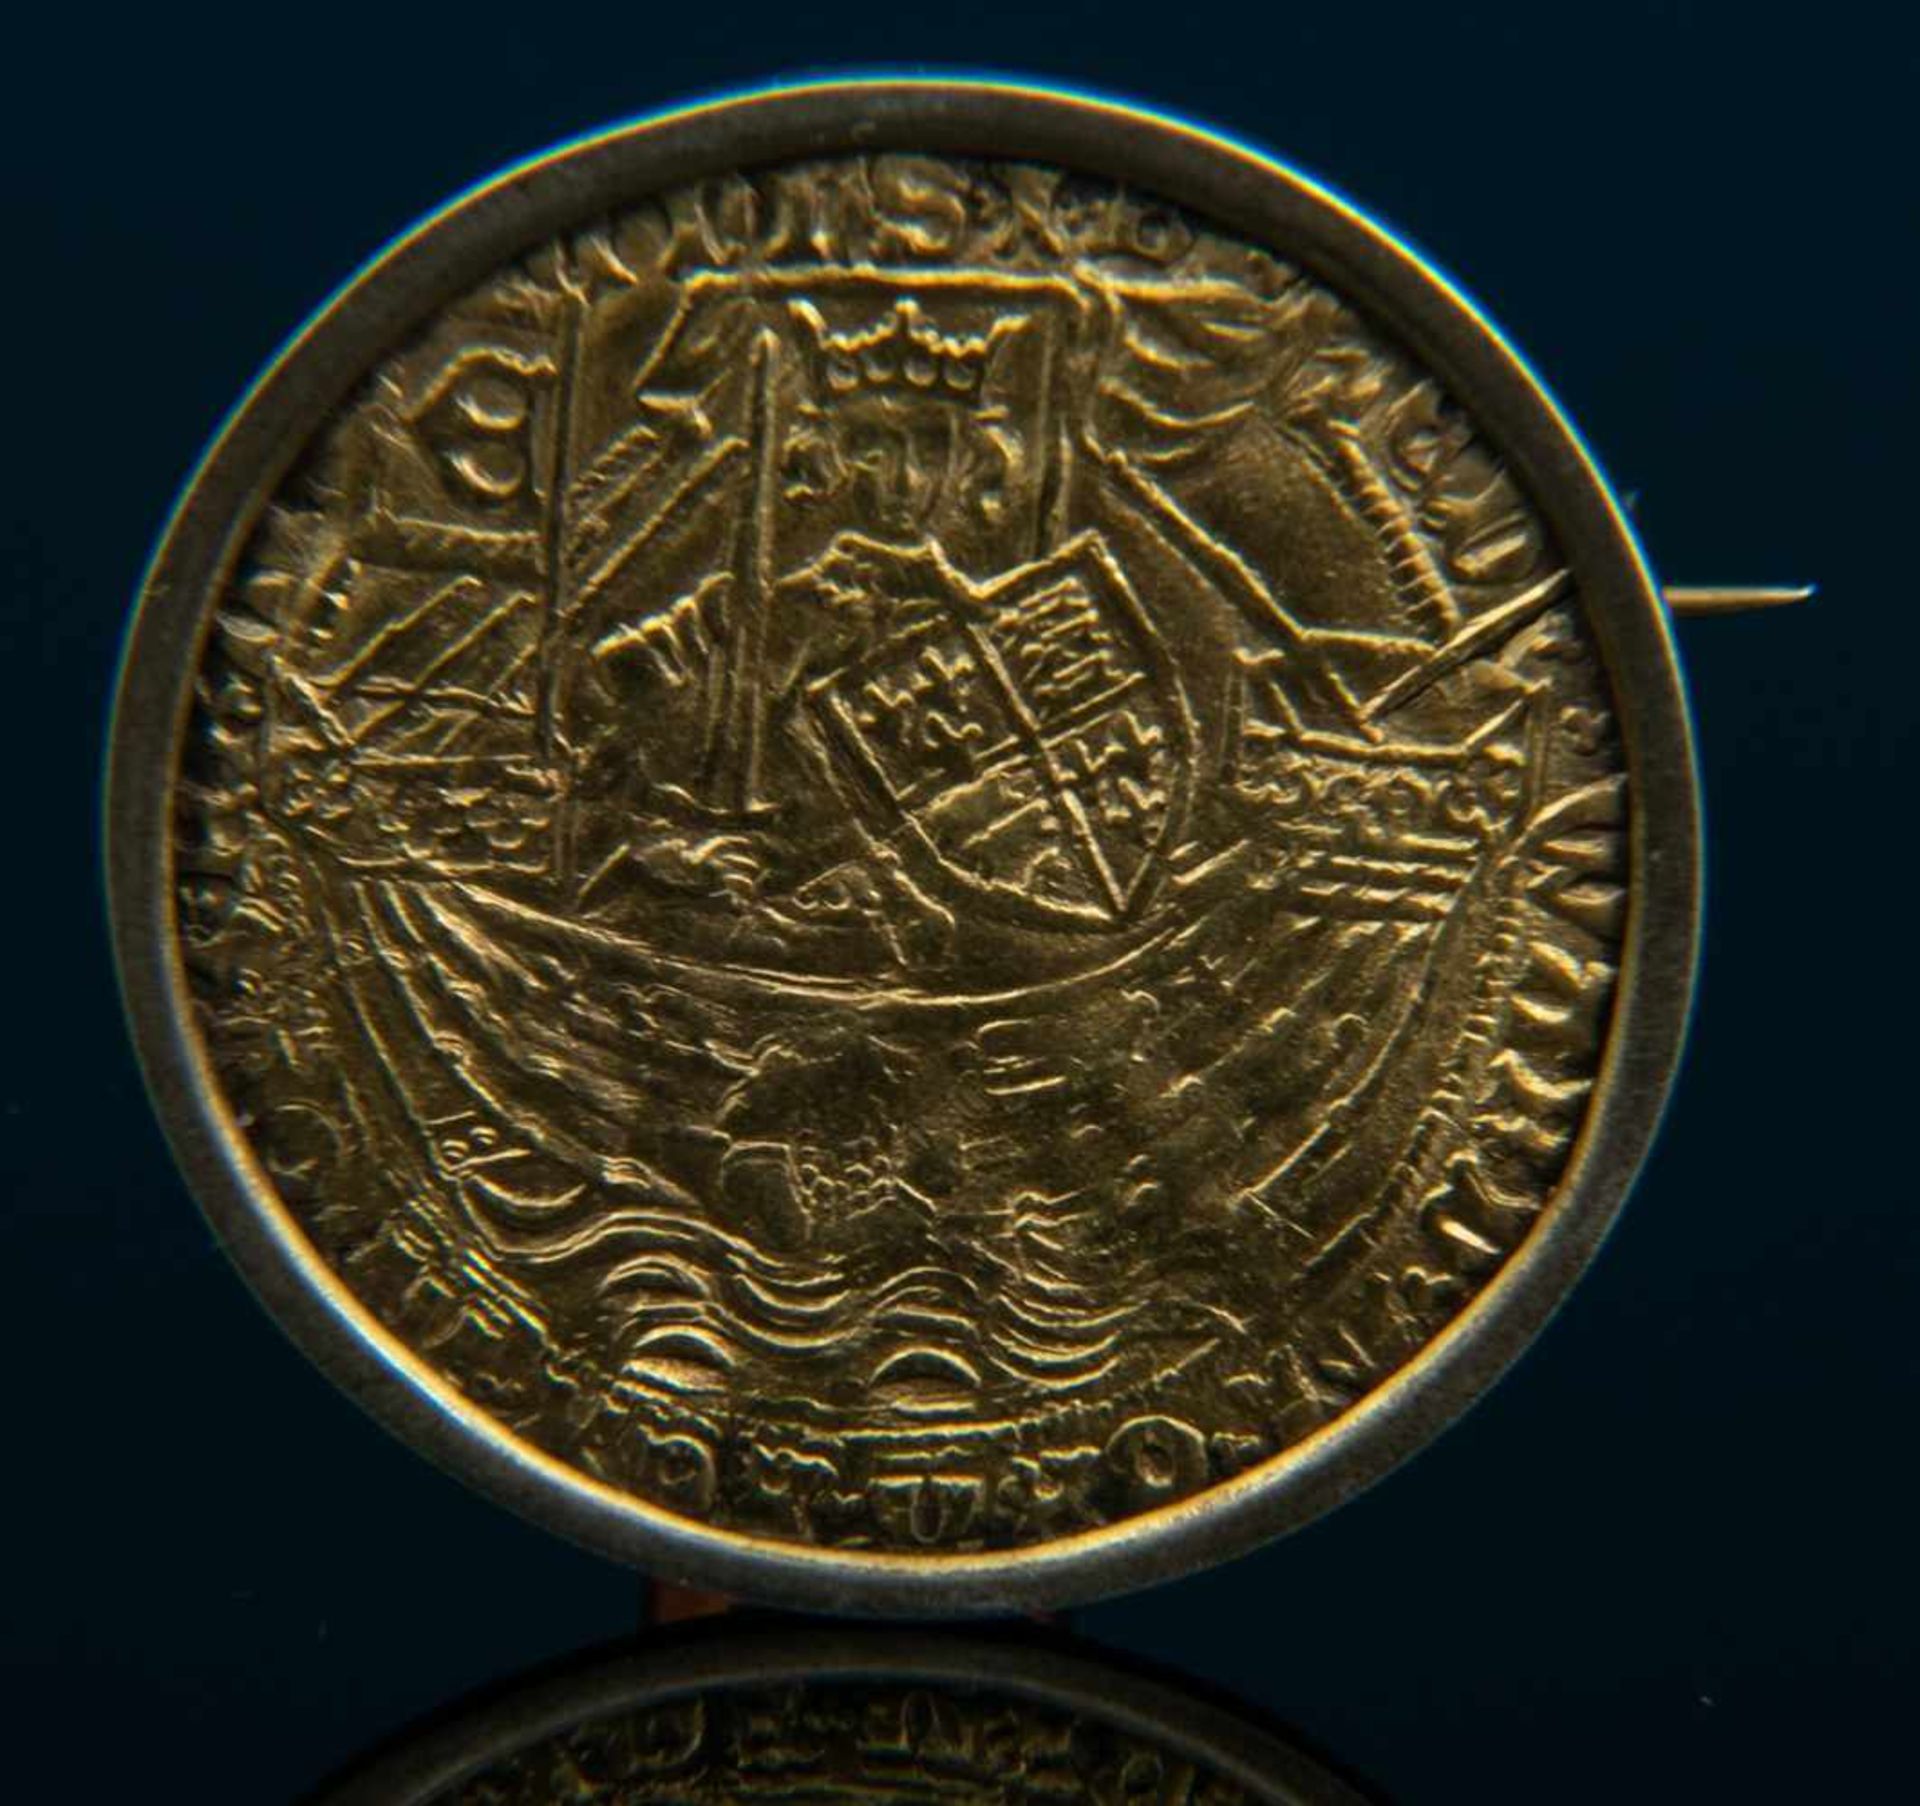 GOLD RYAL / ROSE NOBLE - Goldmünze. England 15. - 17. Jhd., vorderseitig König mit Schwert, Schild & - Bild 3 aus 15